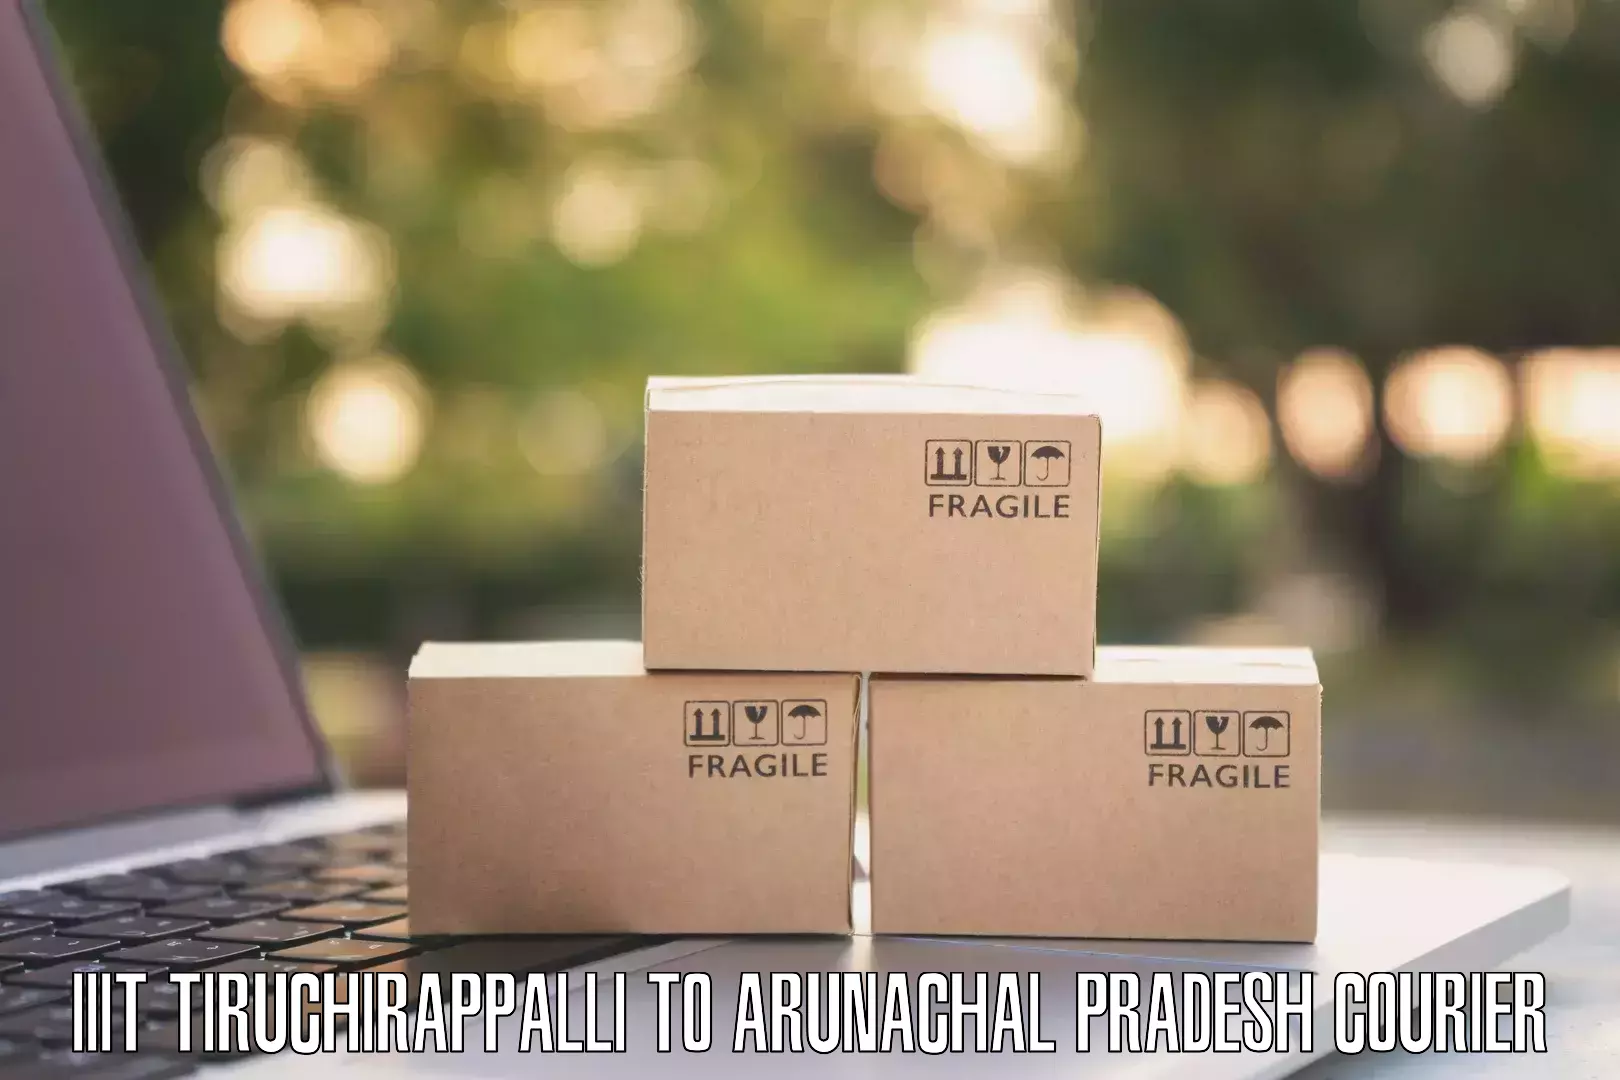 Regular parcel service IIIT Tiruchirappalli to Lohit